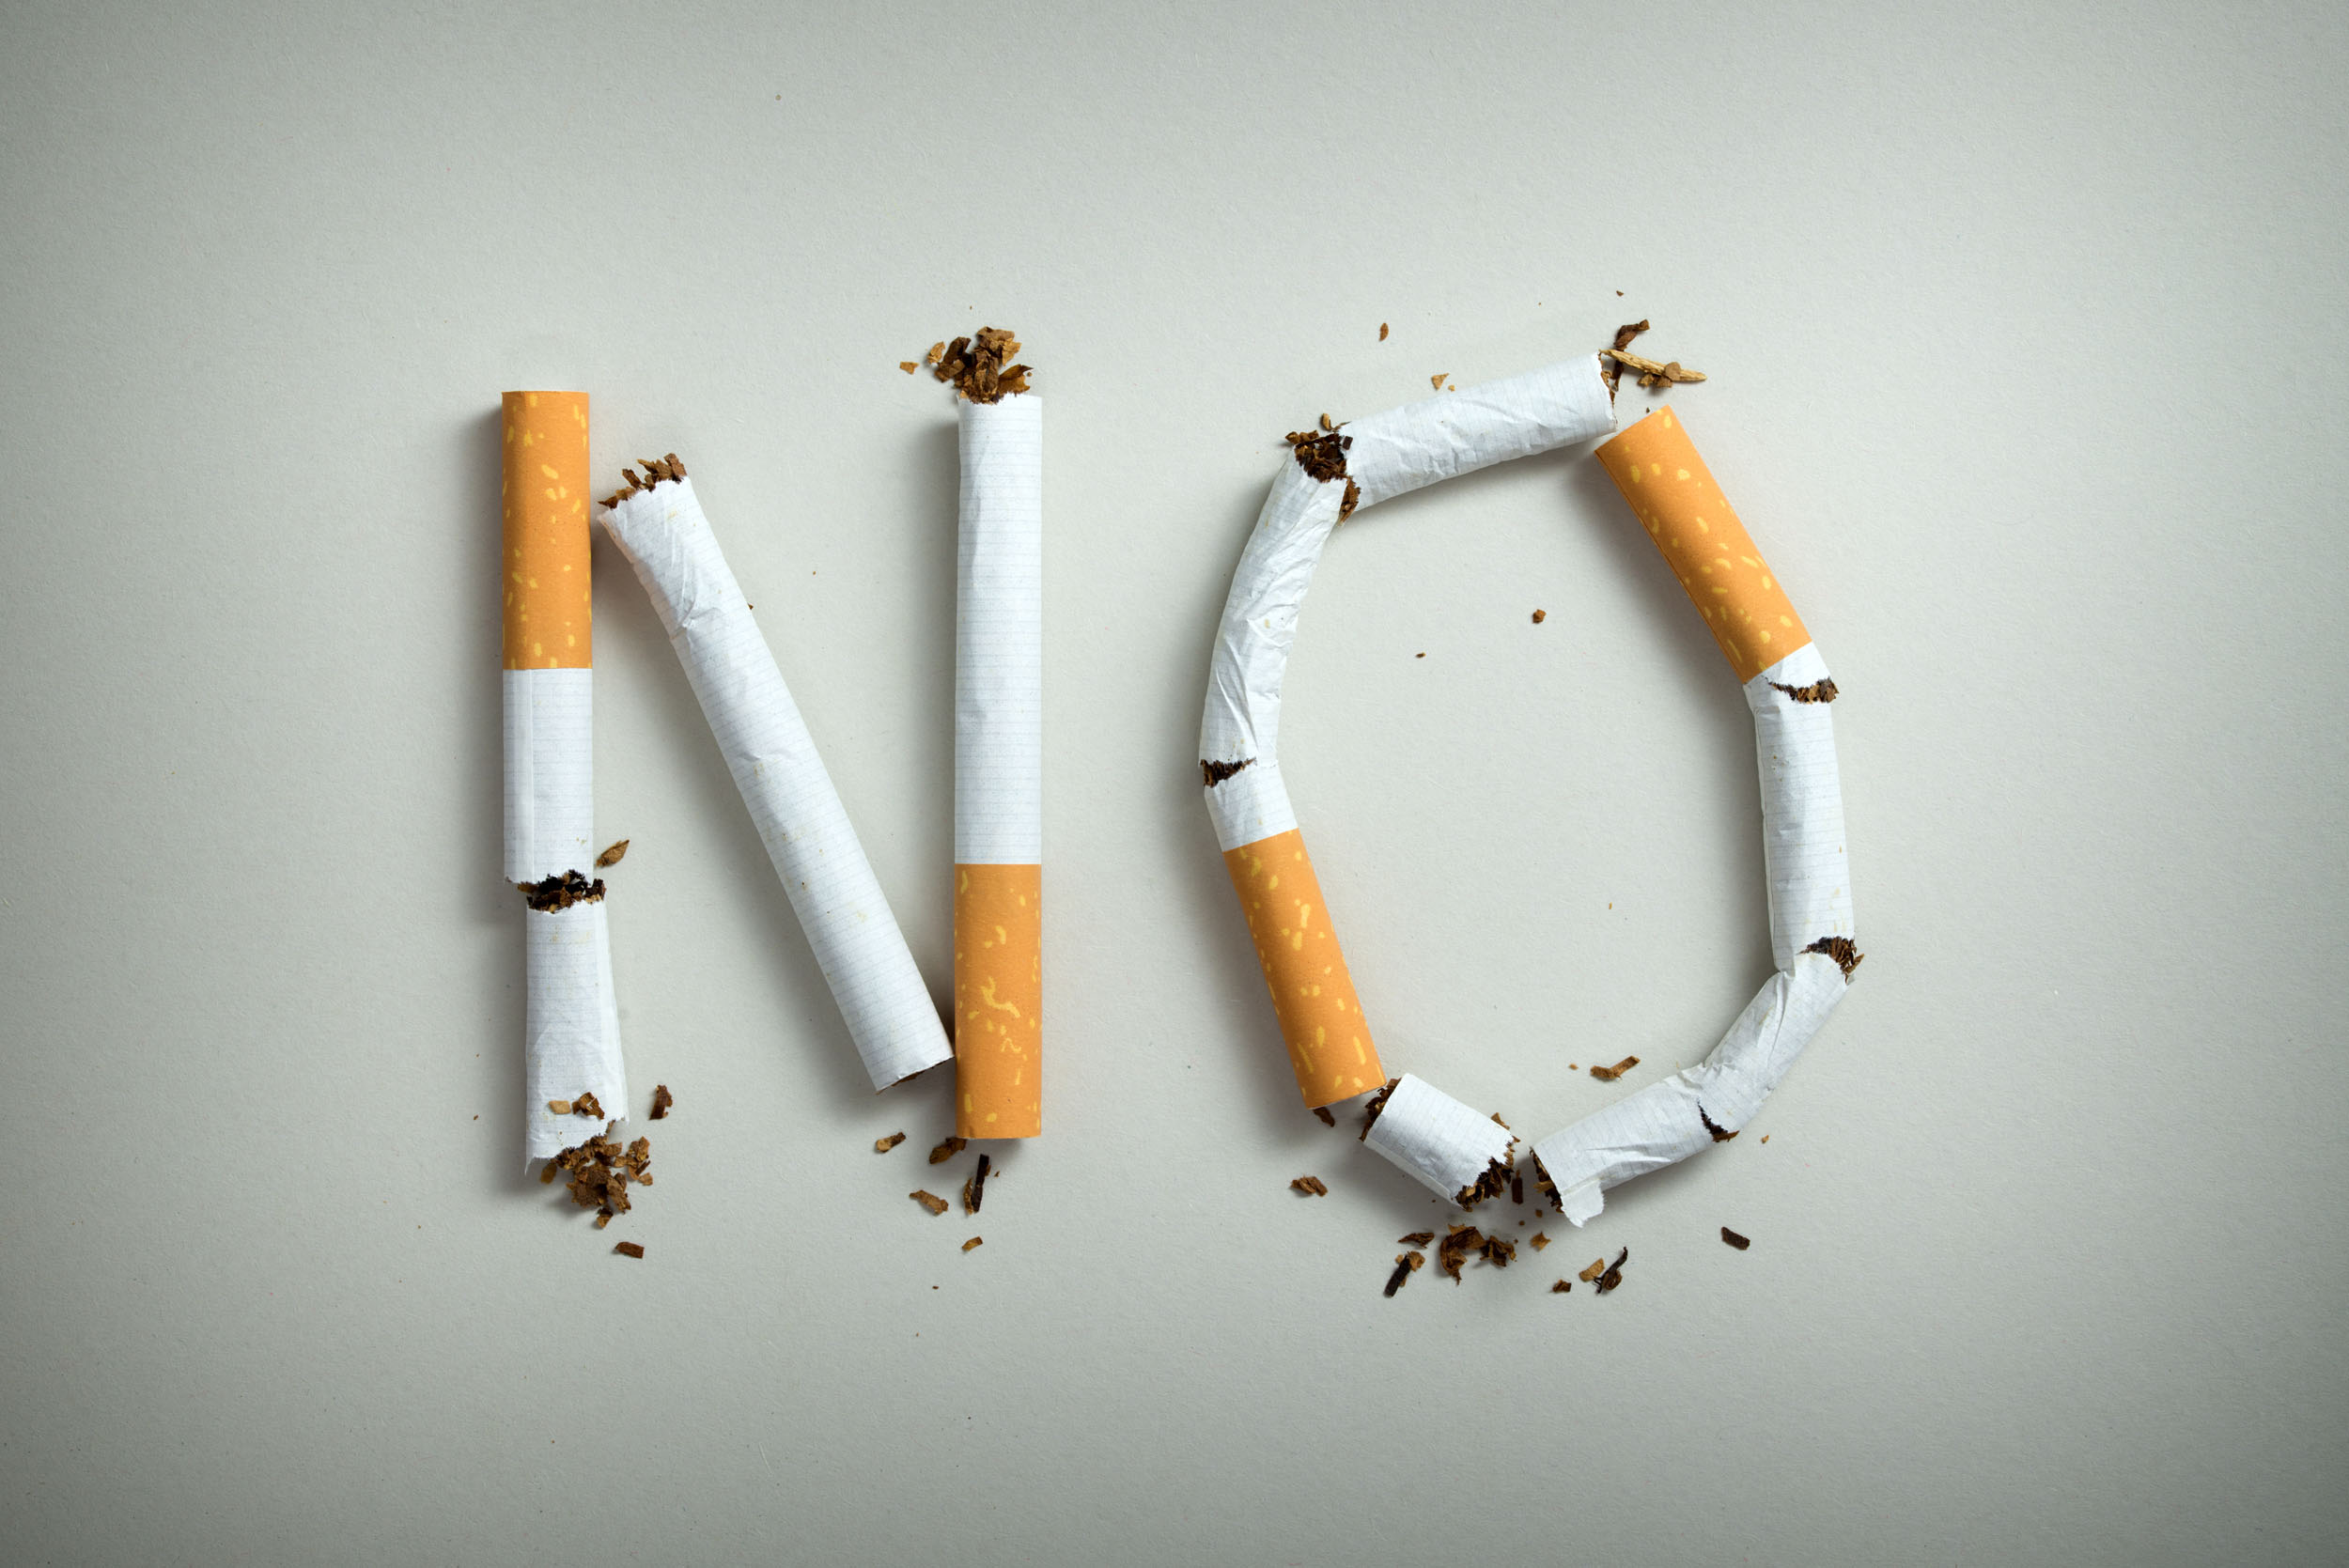 El día Mundial Sin tabaco invita a dejar de fumar, para que dure más el dinero y se ganen años de vida para disfrutar con la familia